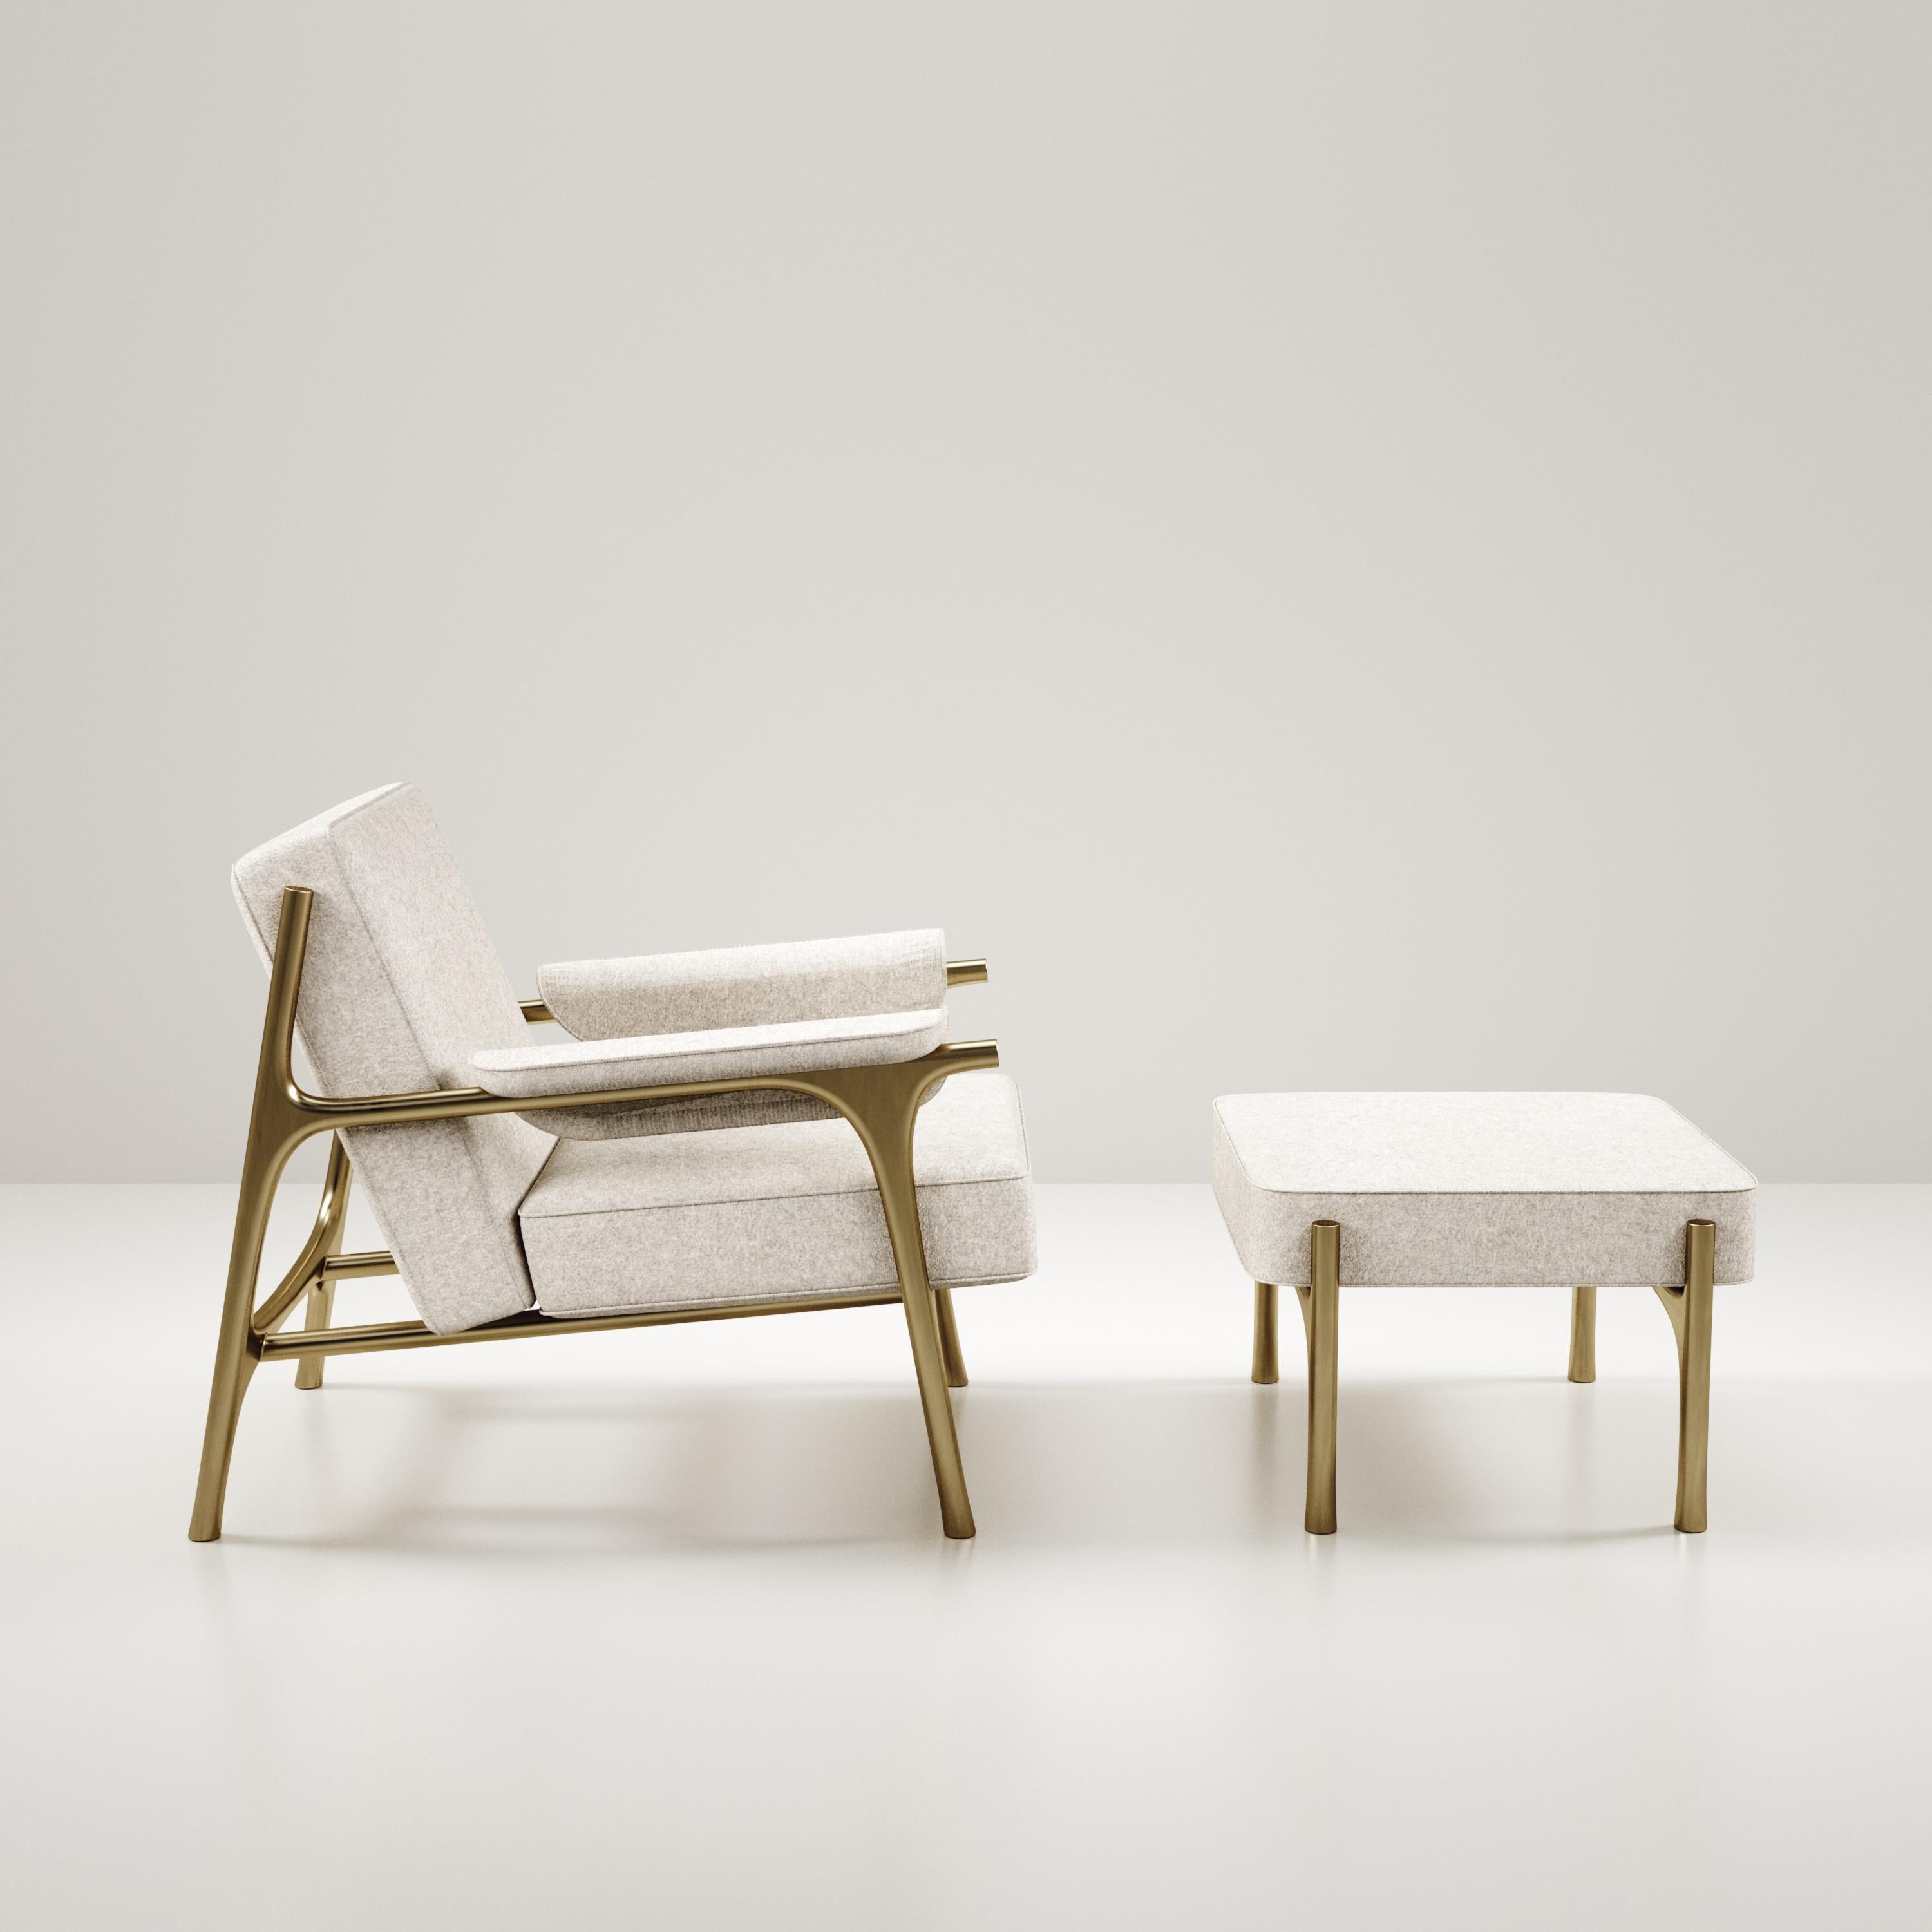 Das Ramo Sessel & Hocker Set von R & Y Augousti ist ein elegantes und vielseitiges Stück. Die Polstermöbel bieten Komfort und bewahren mit dem Gestell und den Details aus Messing in Bronze-Patina eine einzigartige Ästhetik. Diese Auflistung ist für